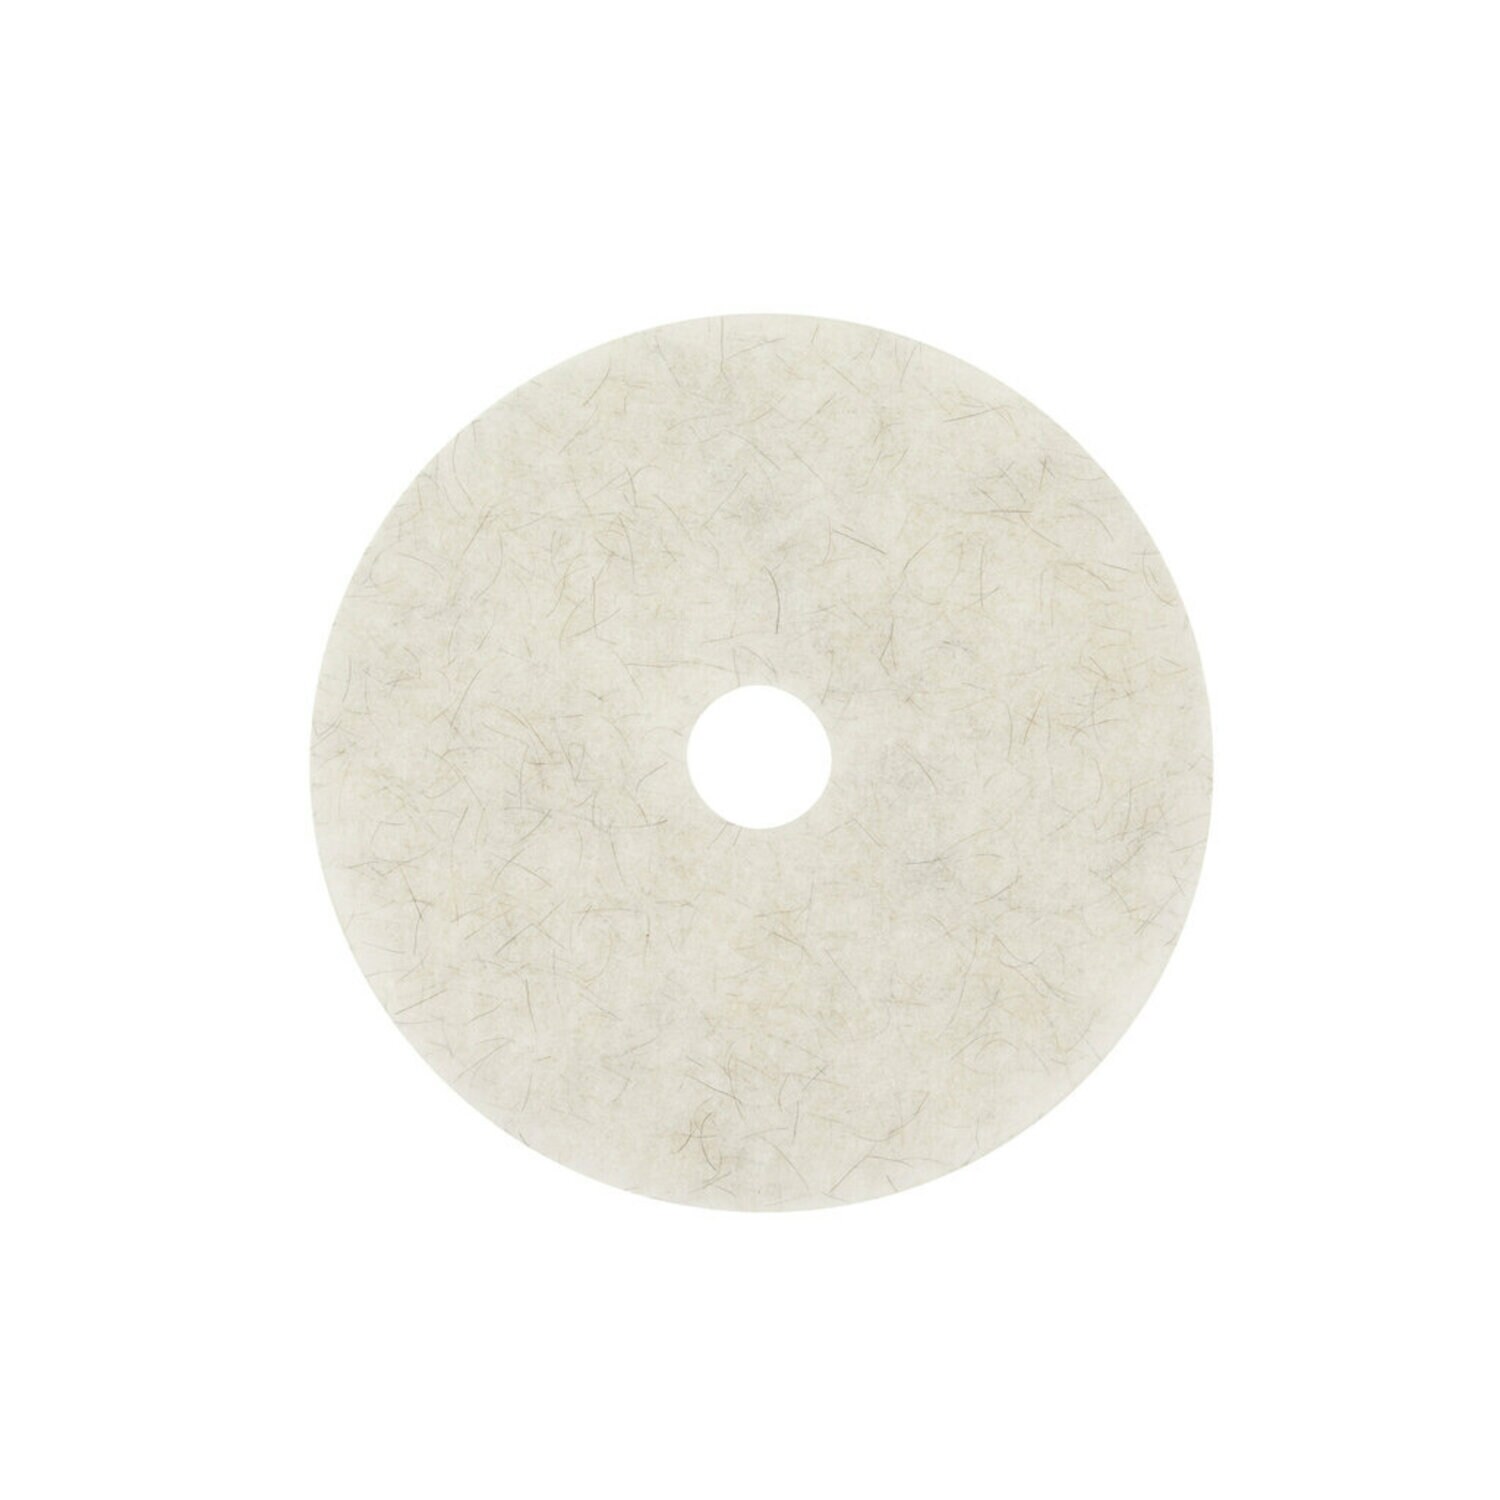 7000000714 - 3M Natural Blend Floor Pads 3300, White/Natural Fiber, 508 mm x 82 mm, 20 in, 5 ea/Case